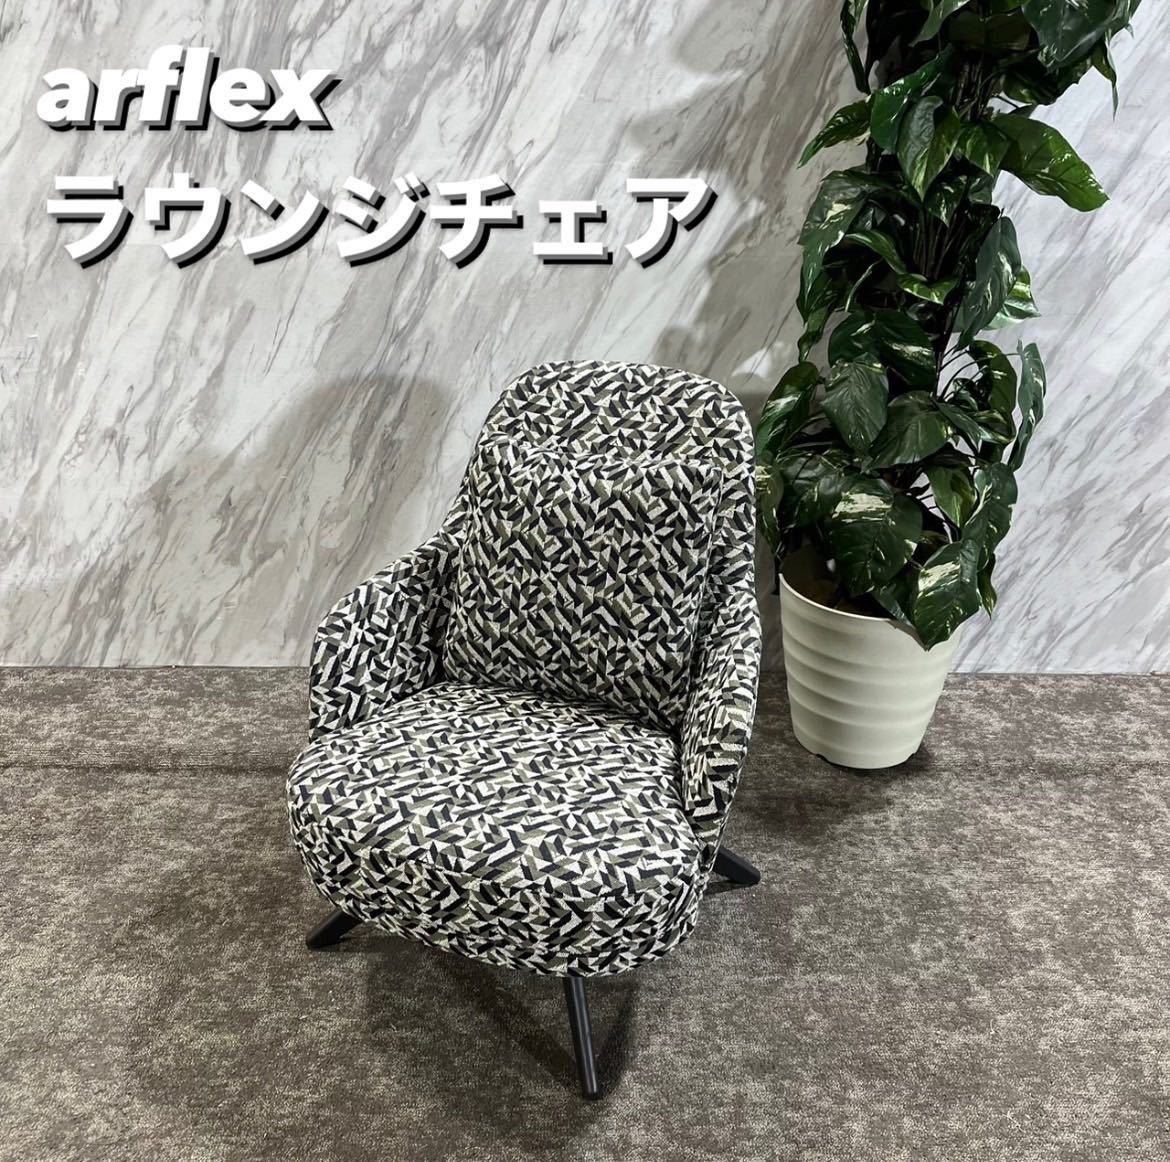 arflex FABIO ラウンジチェア クラシカル調 モダン 家具 Q013